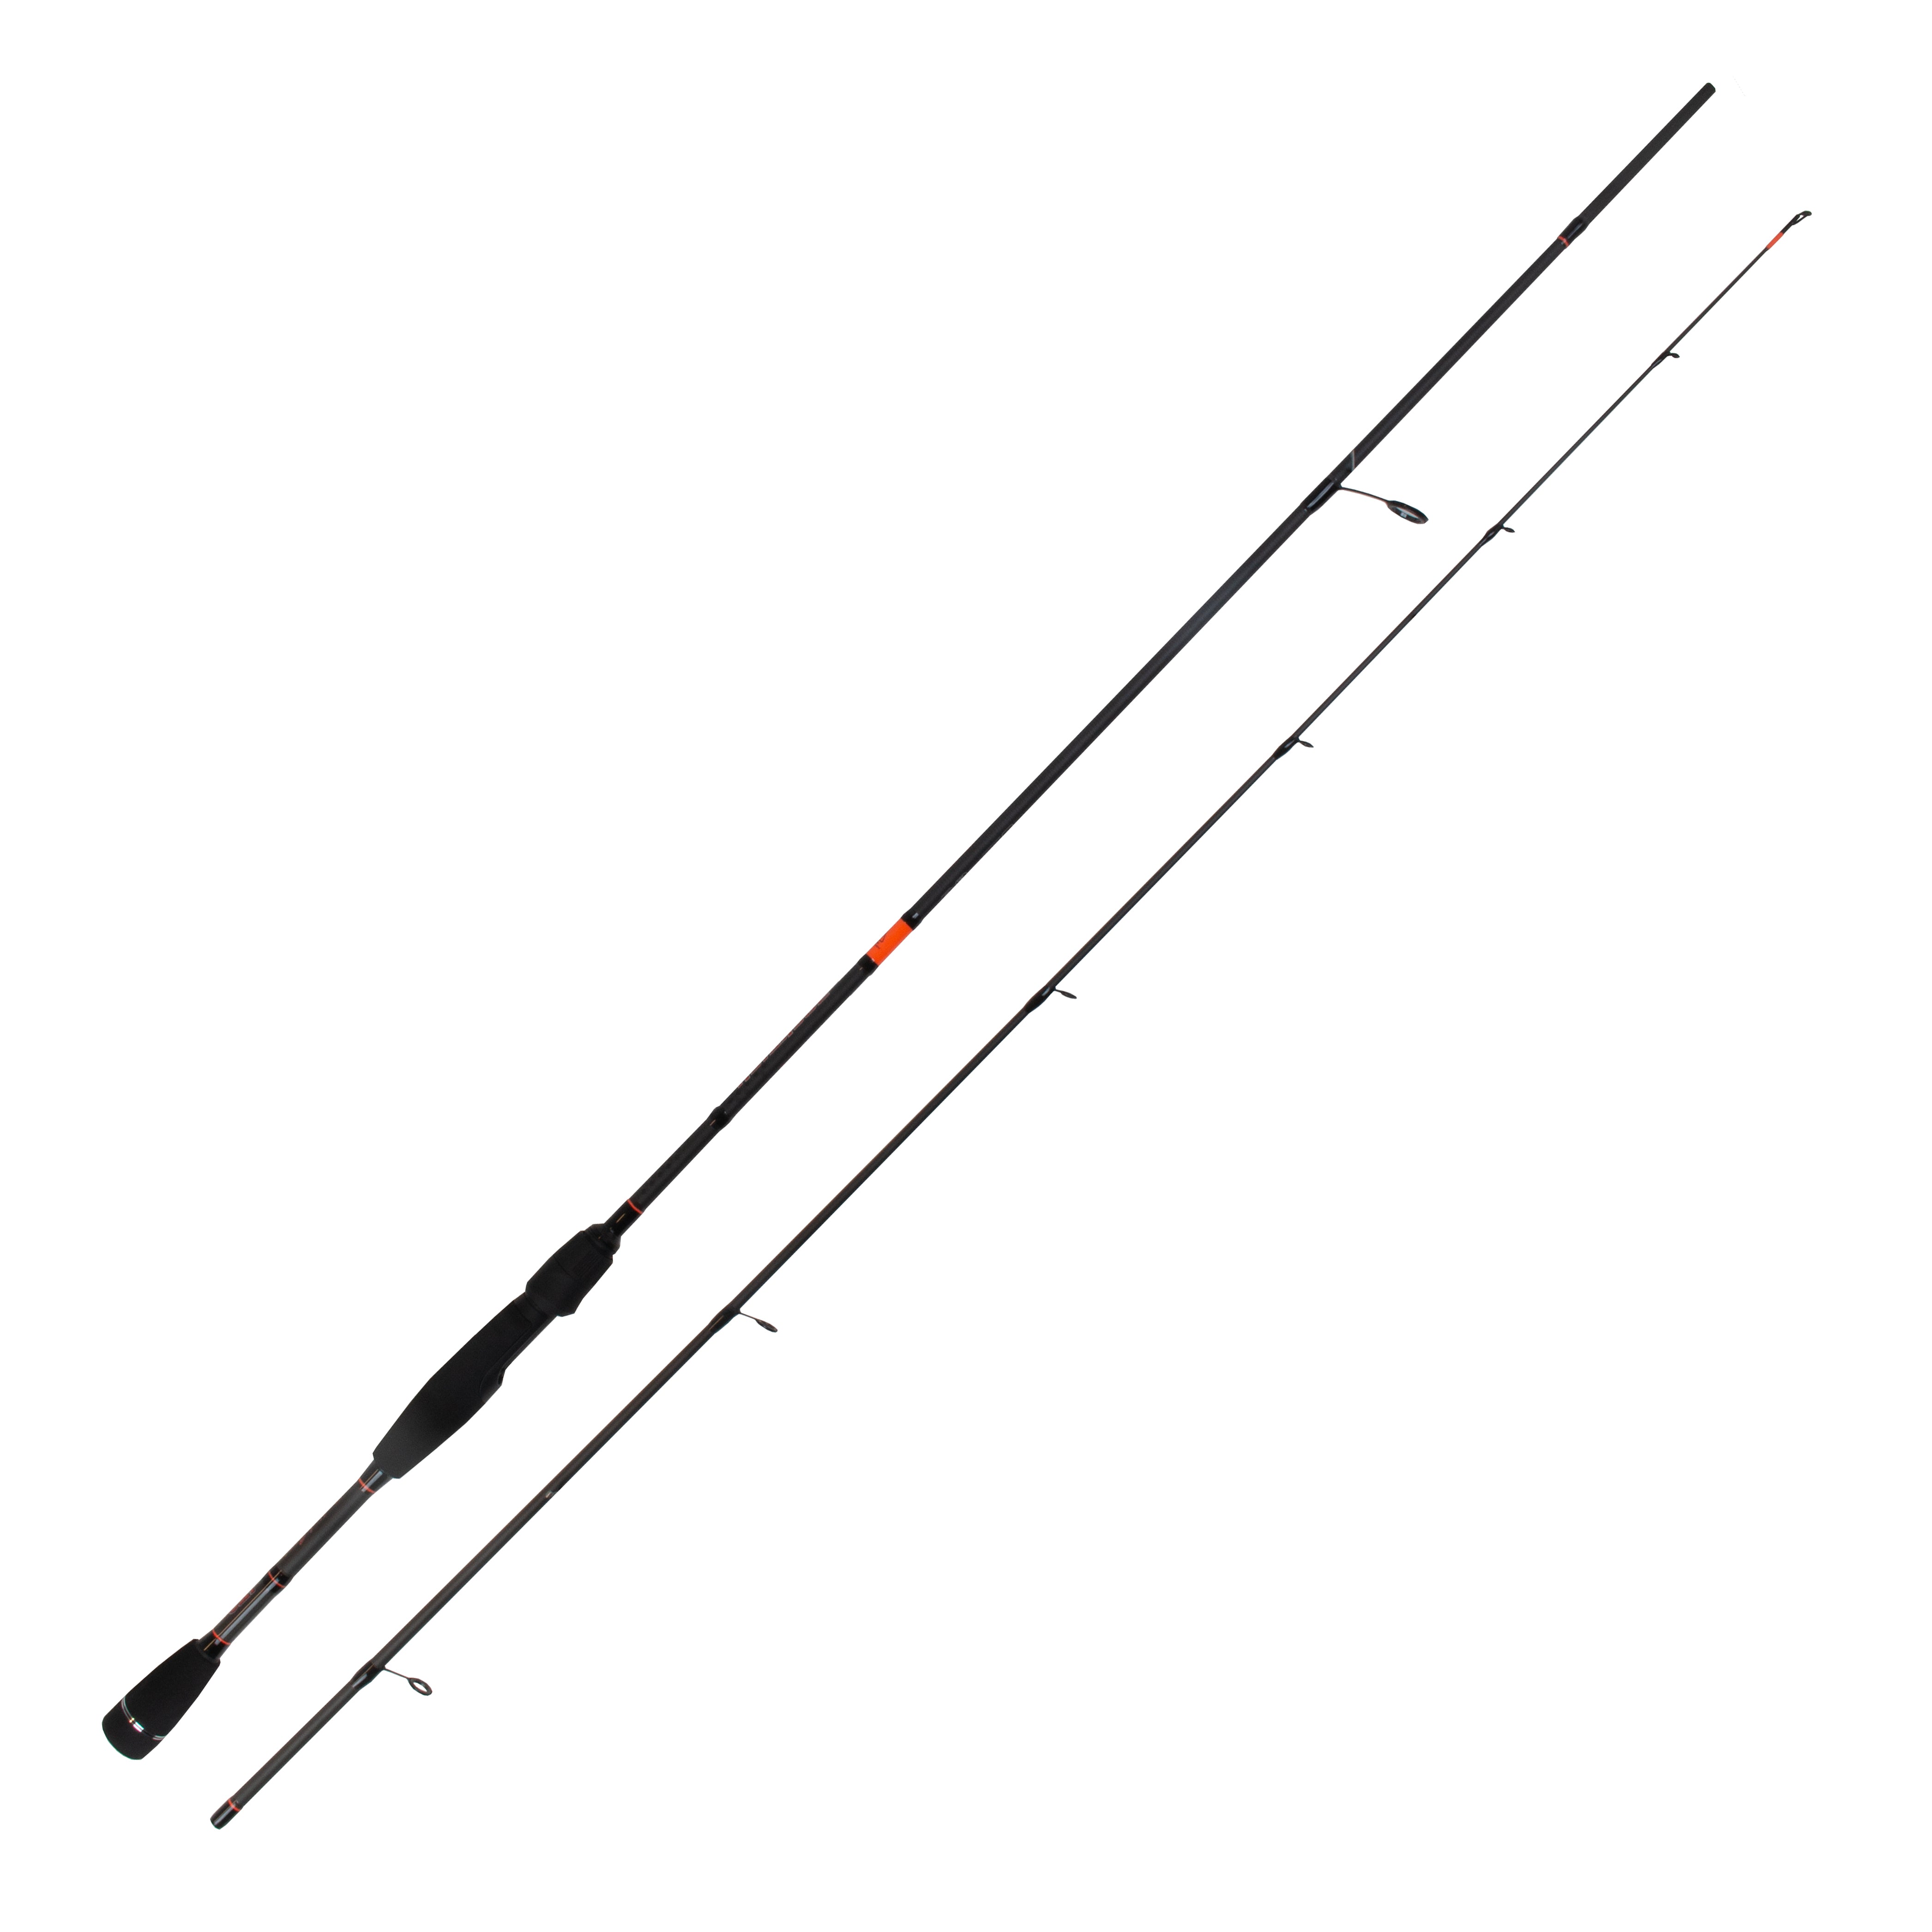 HTO Rockfish 19 LRF Fishing Rods